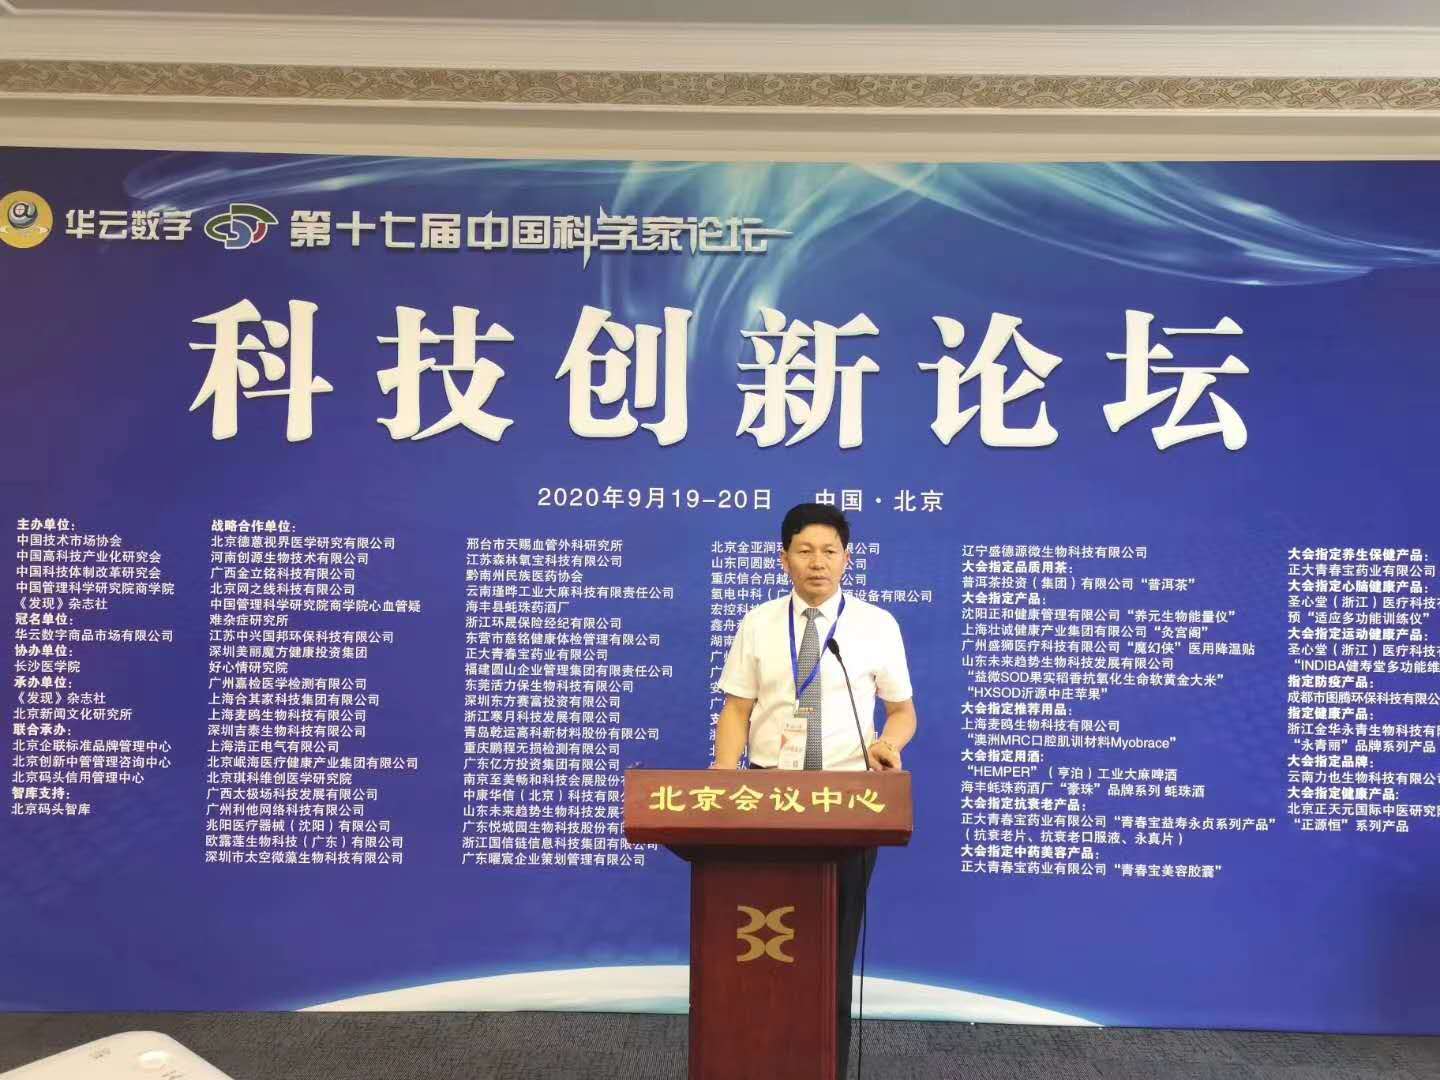 科技创新 引领未来 李乘伊院长受邀参加第十七届中国科学家论坛